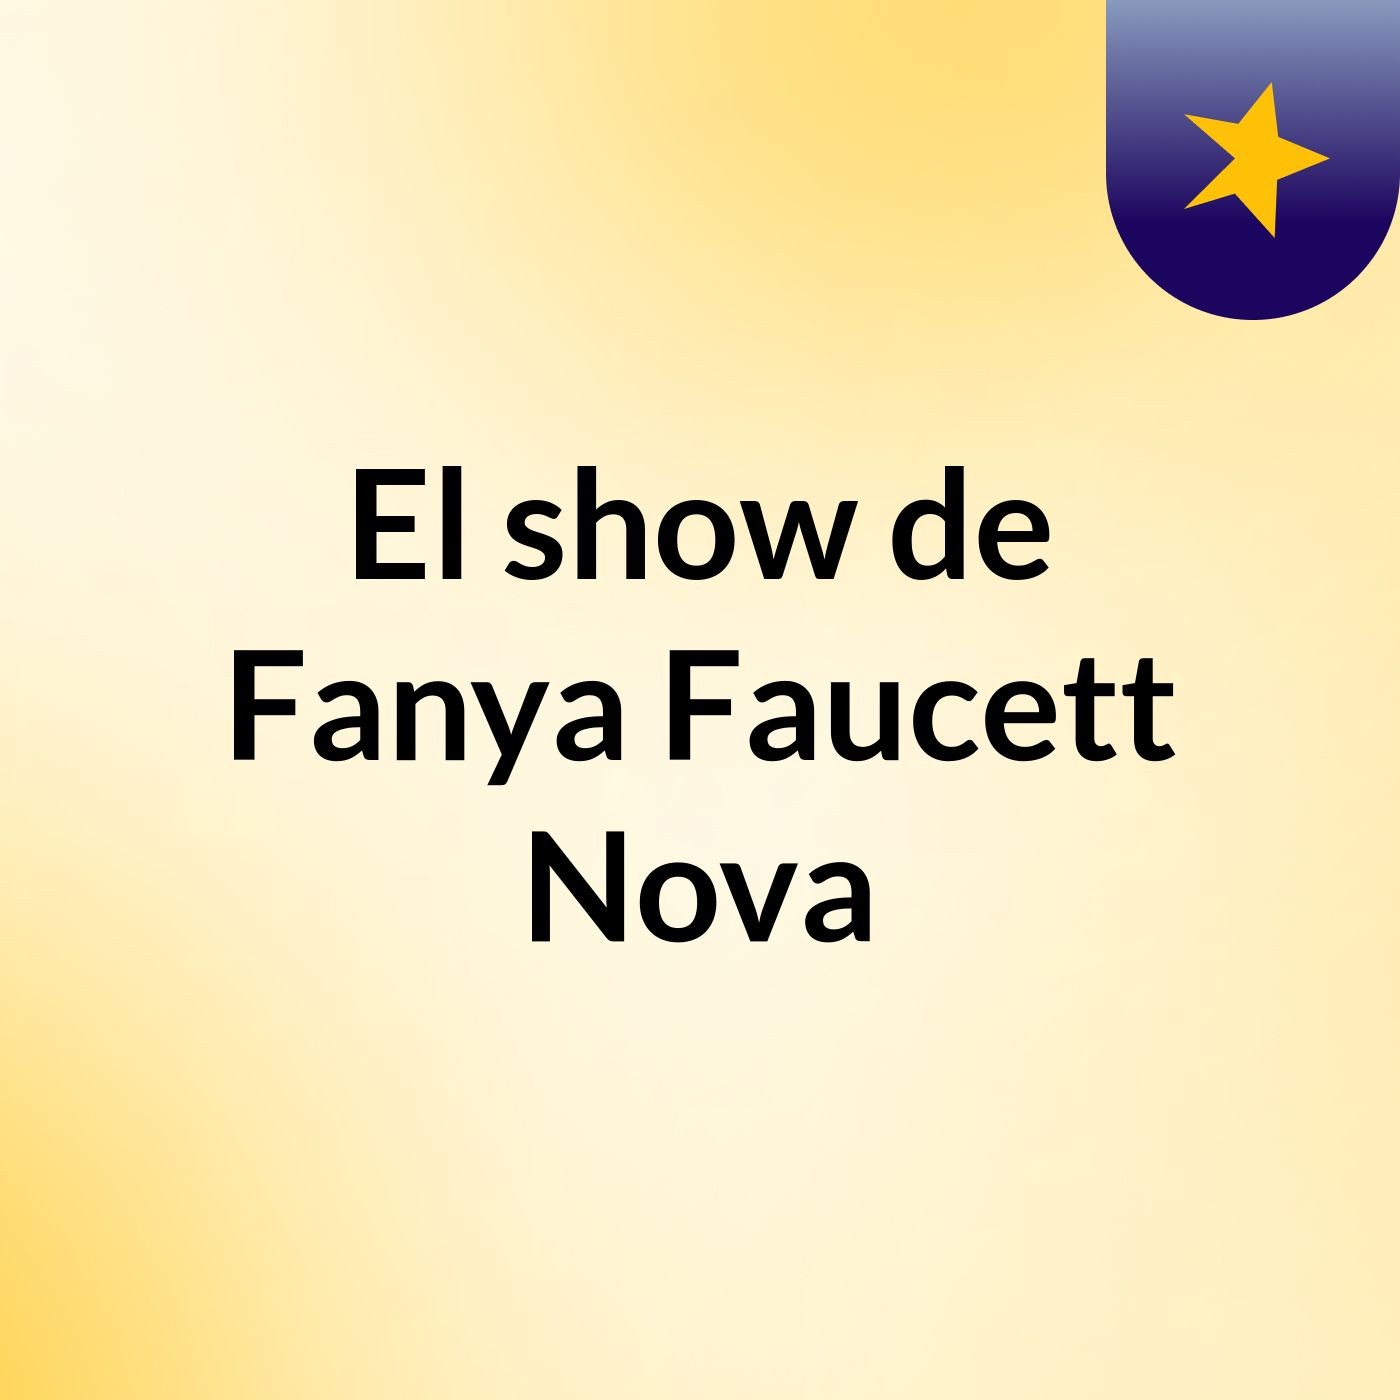 El show de Fanya Faucett Nova